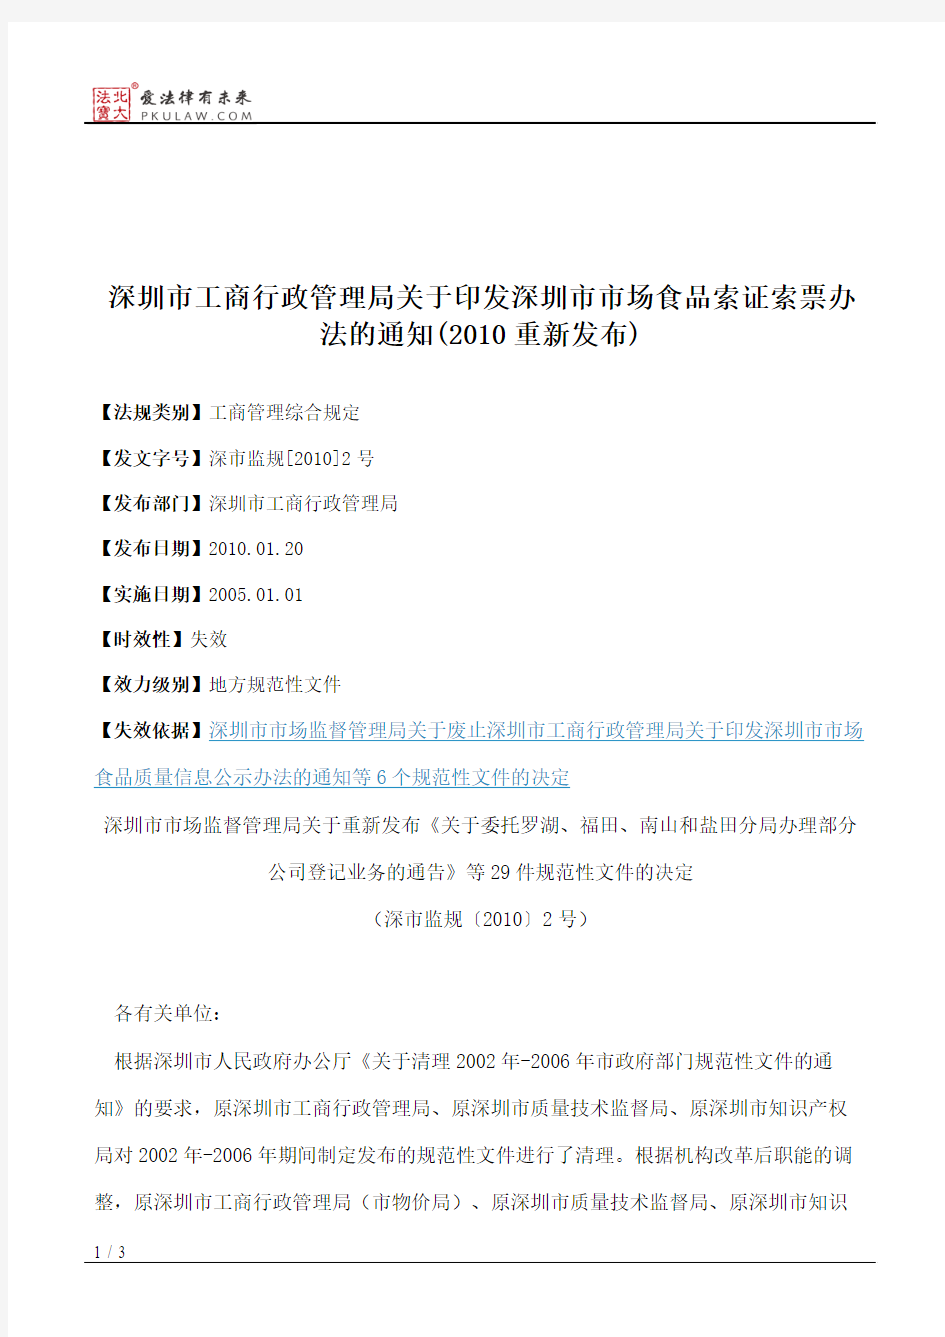 深圳市工商行政管理局关于印发深圳市市场食品索证索票办法的通知